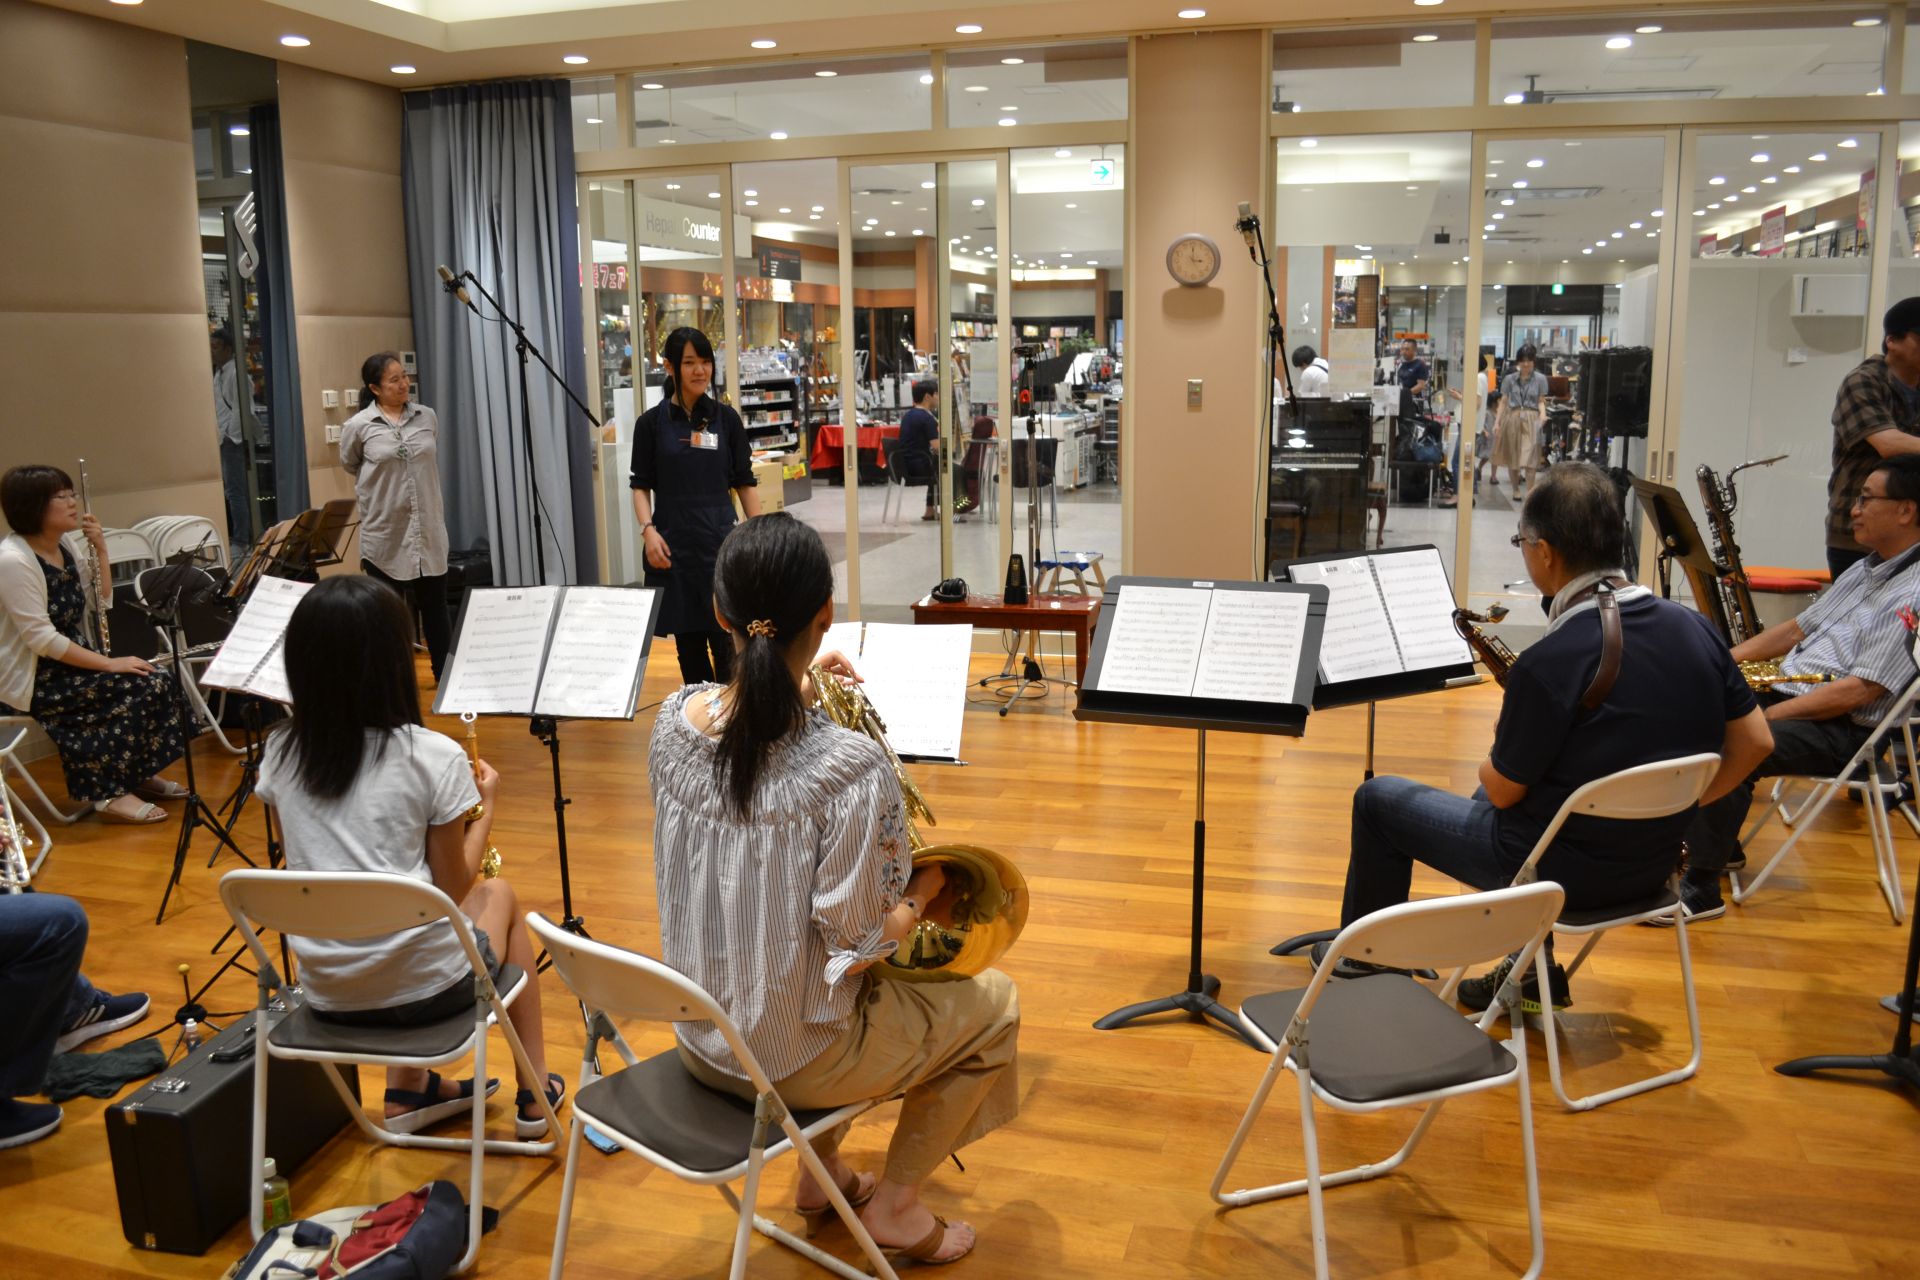 [https://www.shimamura.co.jp/shop/funabashi/instructor/20171122/342::title=] *みなふな管楽器アンサンブルvol.3 開催いたしました！ こんにちは。南船橋店の浅井です。 9月1日に第3回みなふな管楽器アンサンブル開催いたし […]